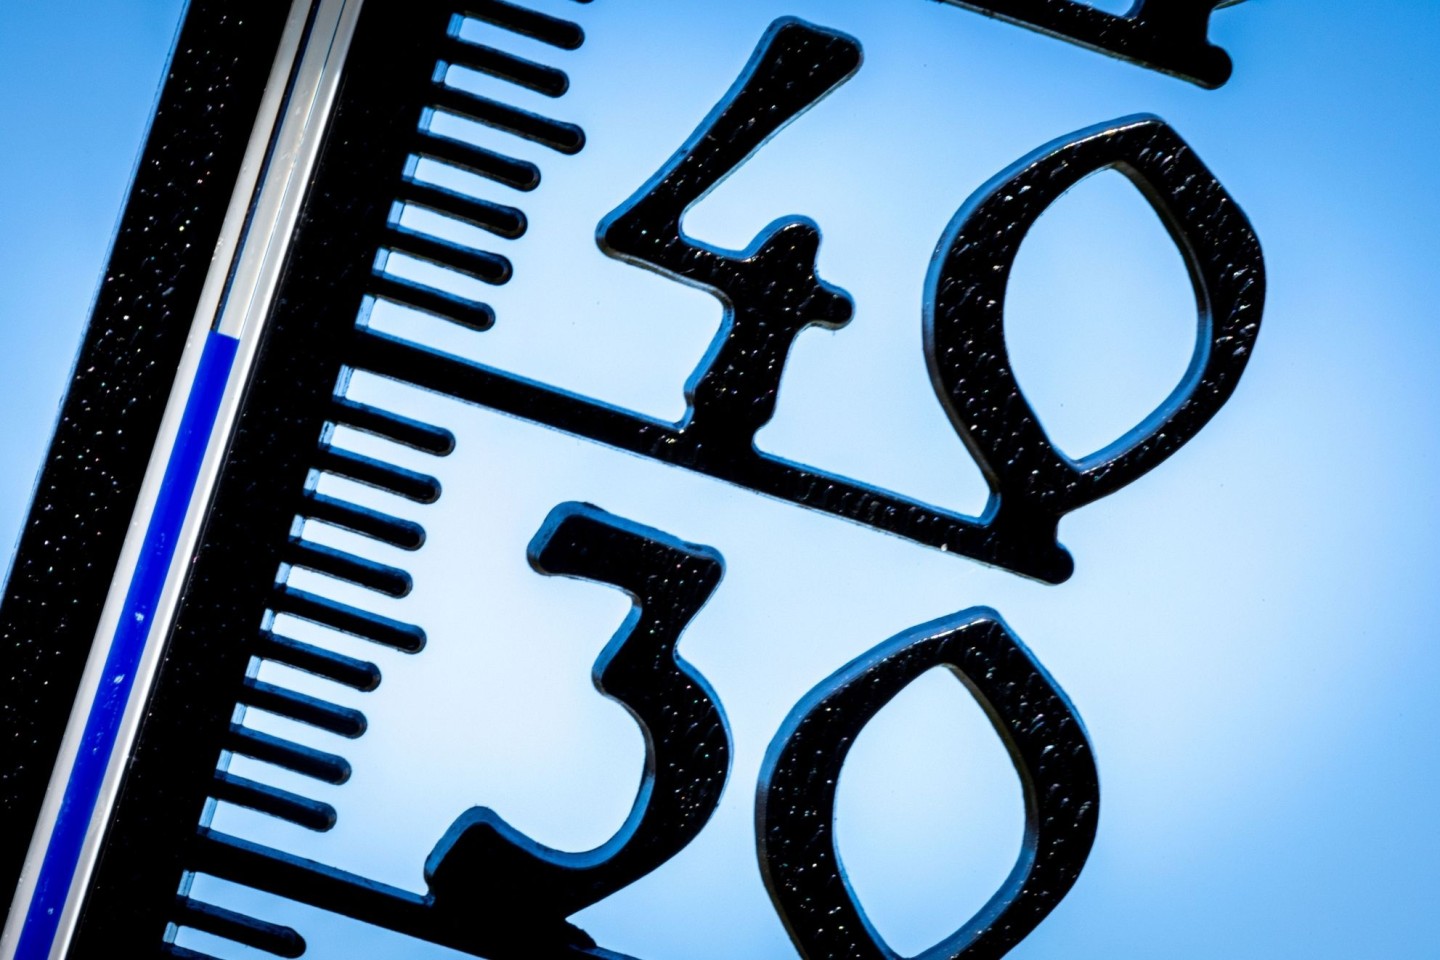 1983 kletterte das Thermometer in Deutschland zum ersten Mal auf 40 Grad.